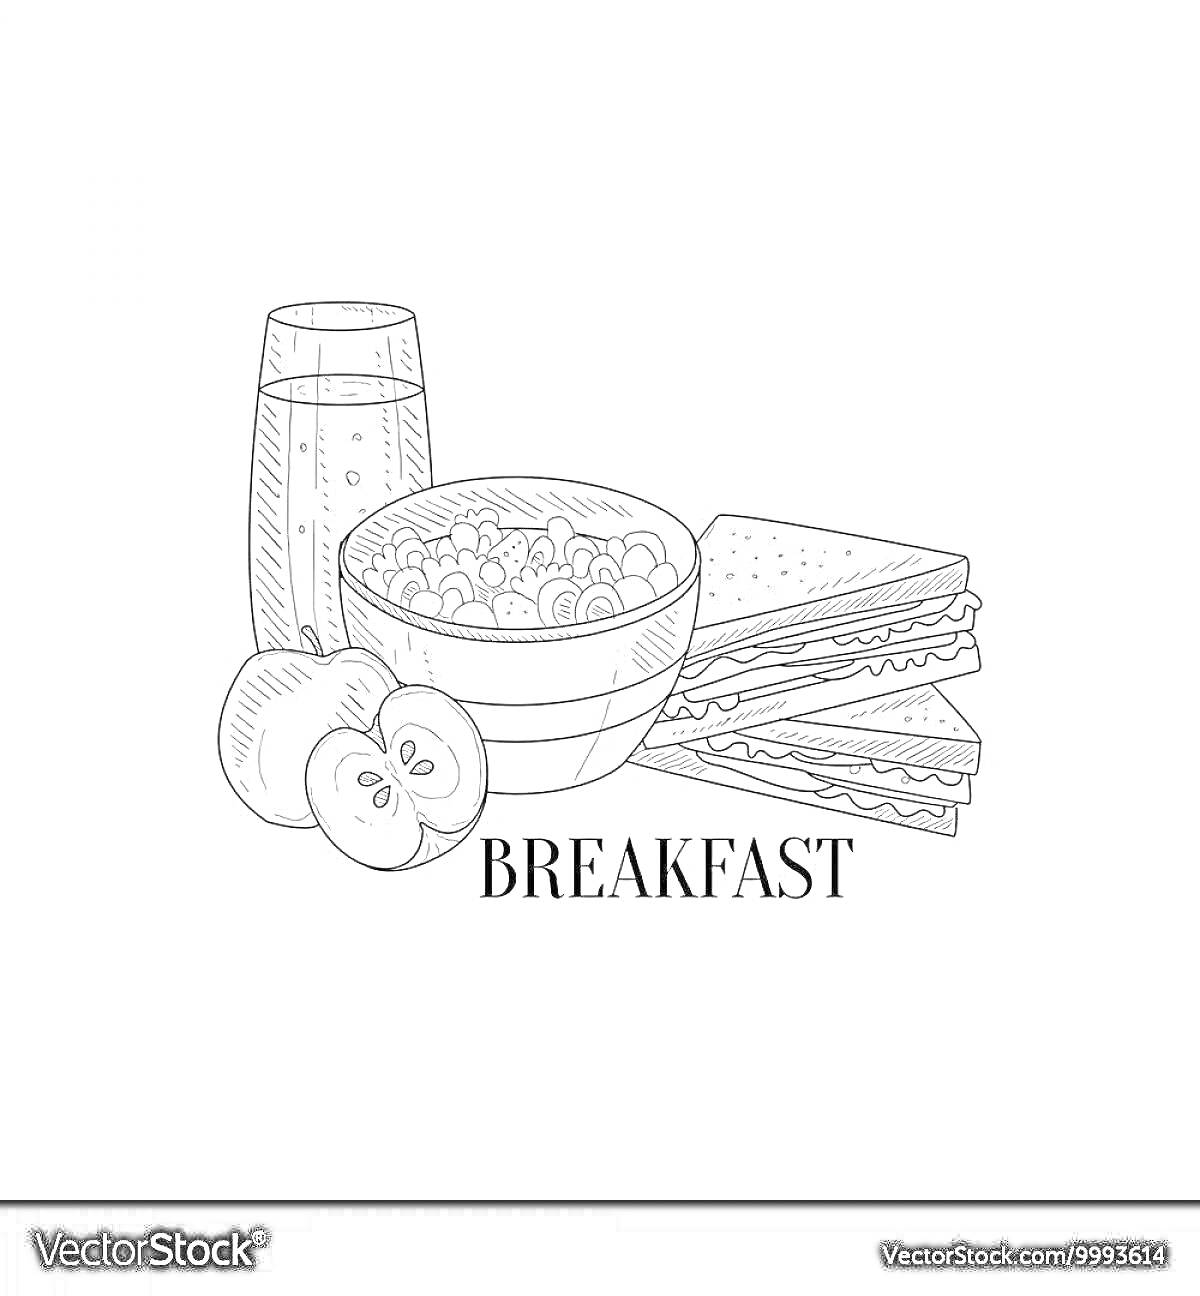 На раскраске изображено: Завтрак, Каша, Яблоко, Сэндвич, Сок, Еда для детей, Еда